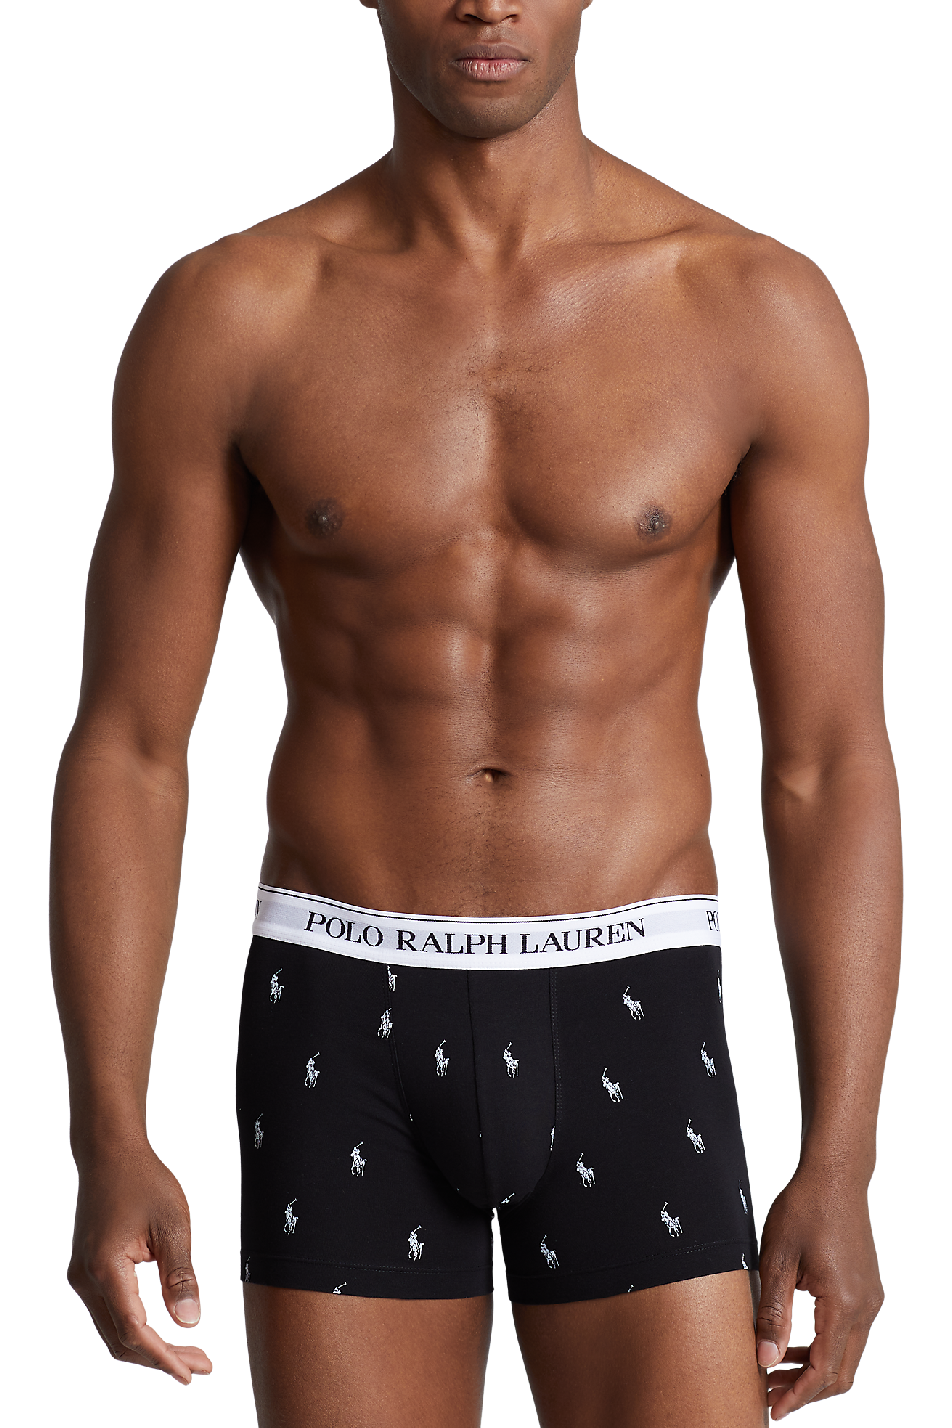 Ralph Lauren Underwear | Men's Boxers, Boxer Briefs & Briefs | Pants & Socks